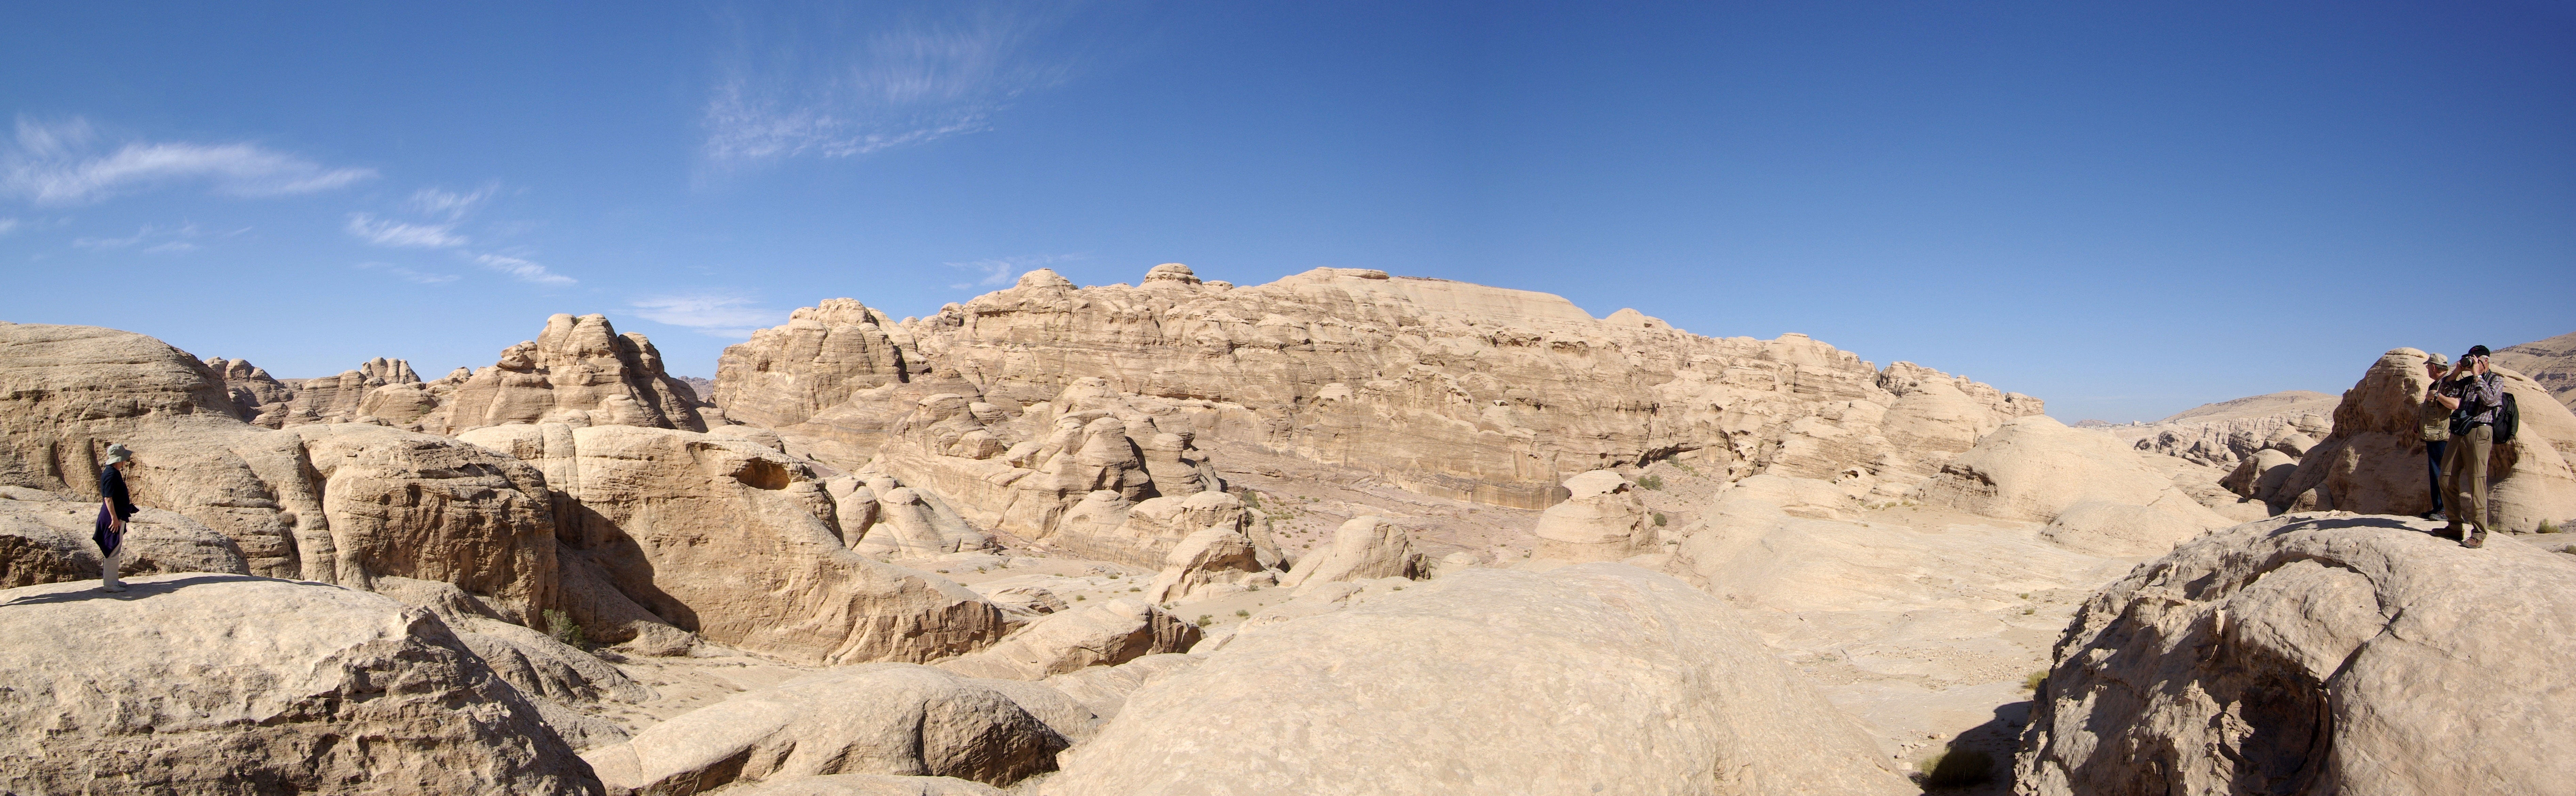 Photo Jordan desert near Petra